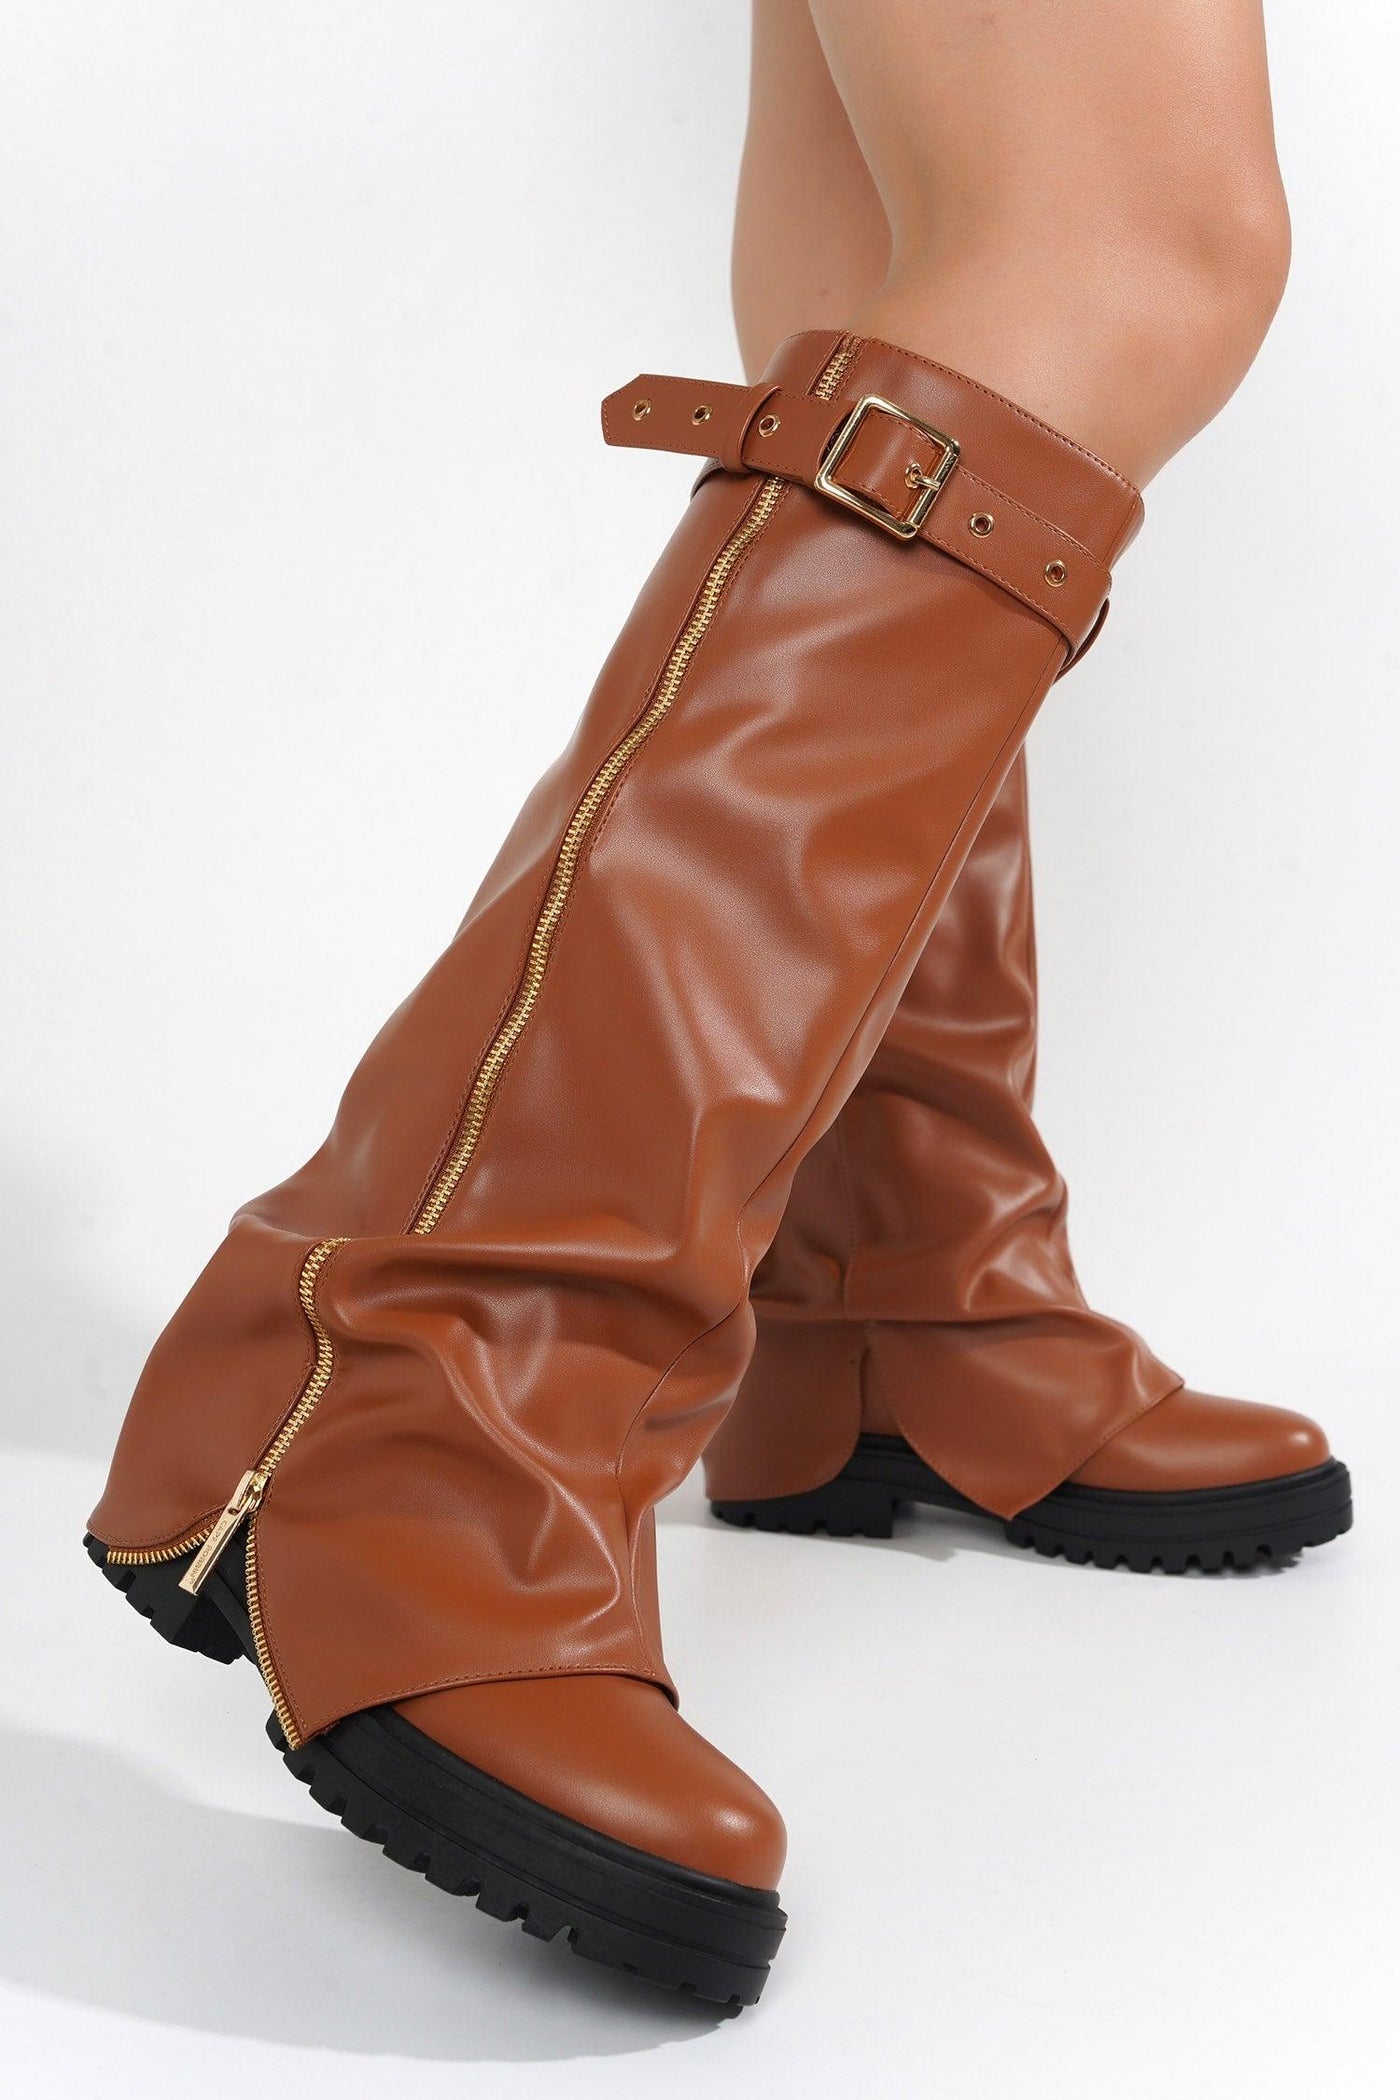 FUNAFUTI - TAN Thigh High Boots - AMIClubwear